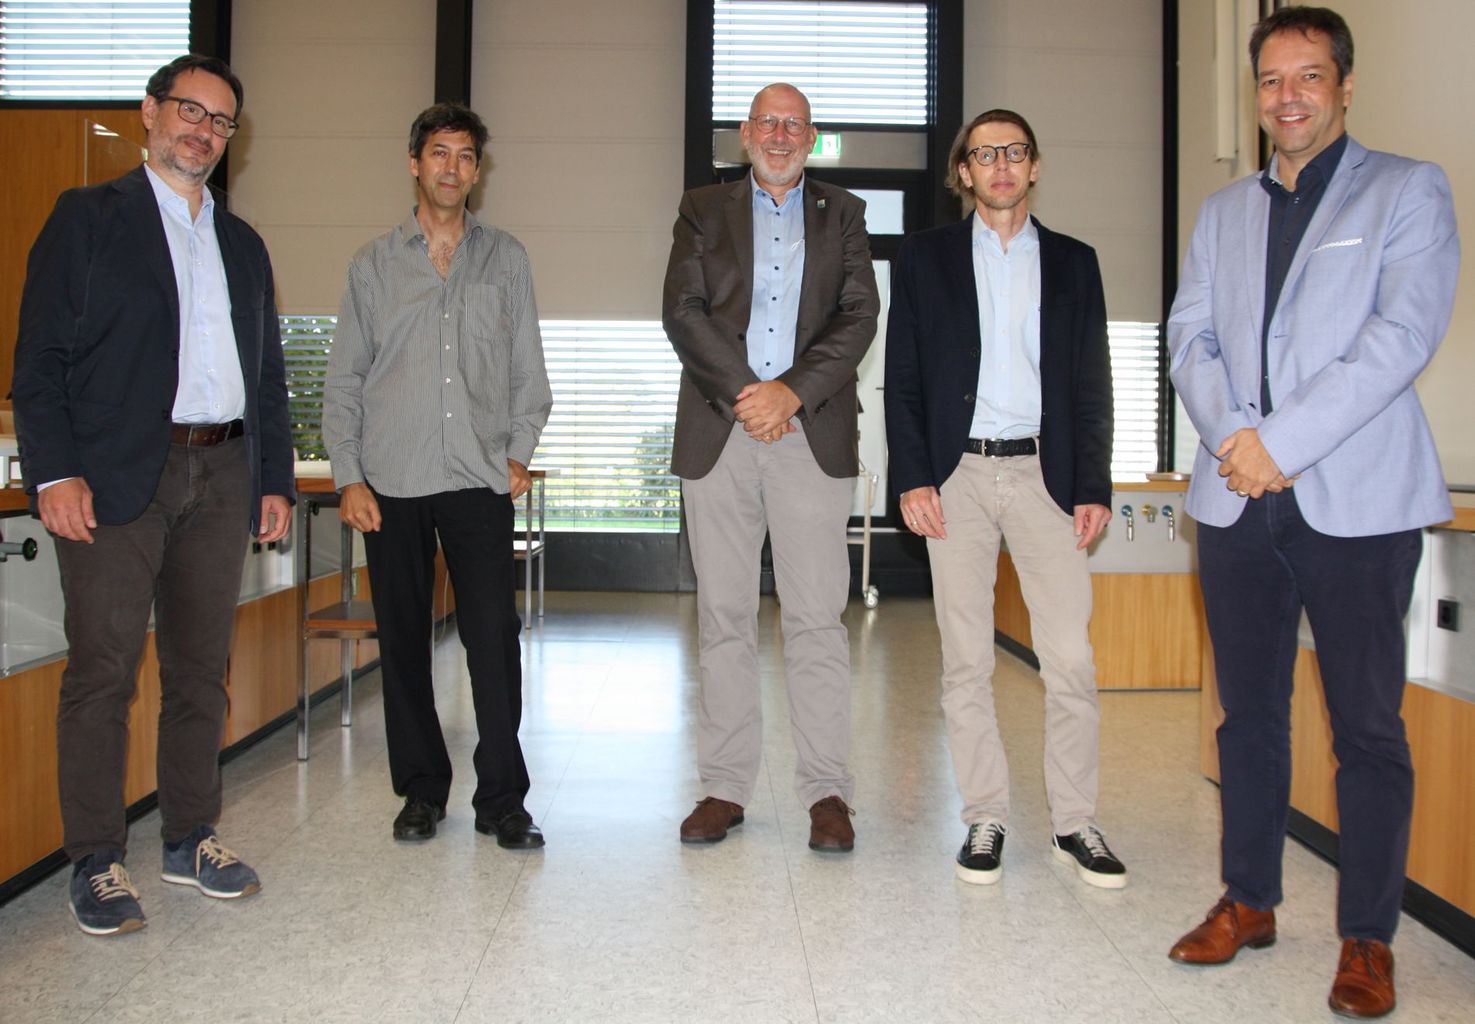 Les cinq intervenants du Symposium Röntgen 2021 (de gauche à droite): Davide Bleiner, Stéphane Paltani, Ralph Claessen, Clemens Schulze-Briese, Marco Stampanoni